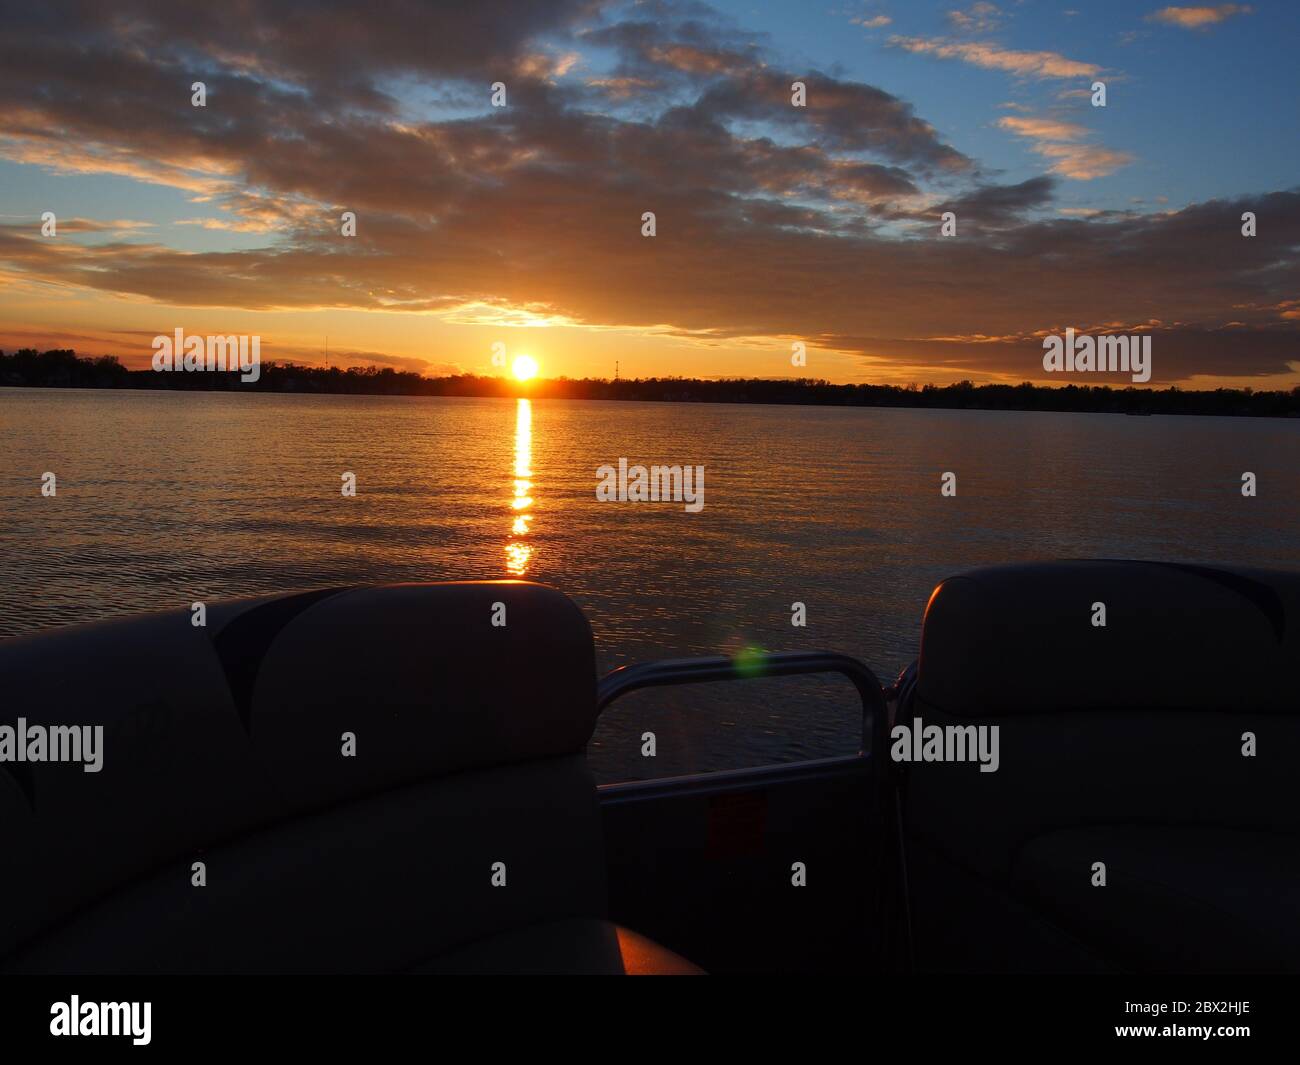 Puesta de sol en el lago que se refleja en el Pontoon Boat Foto de stock